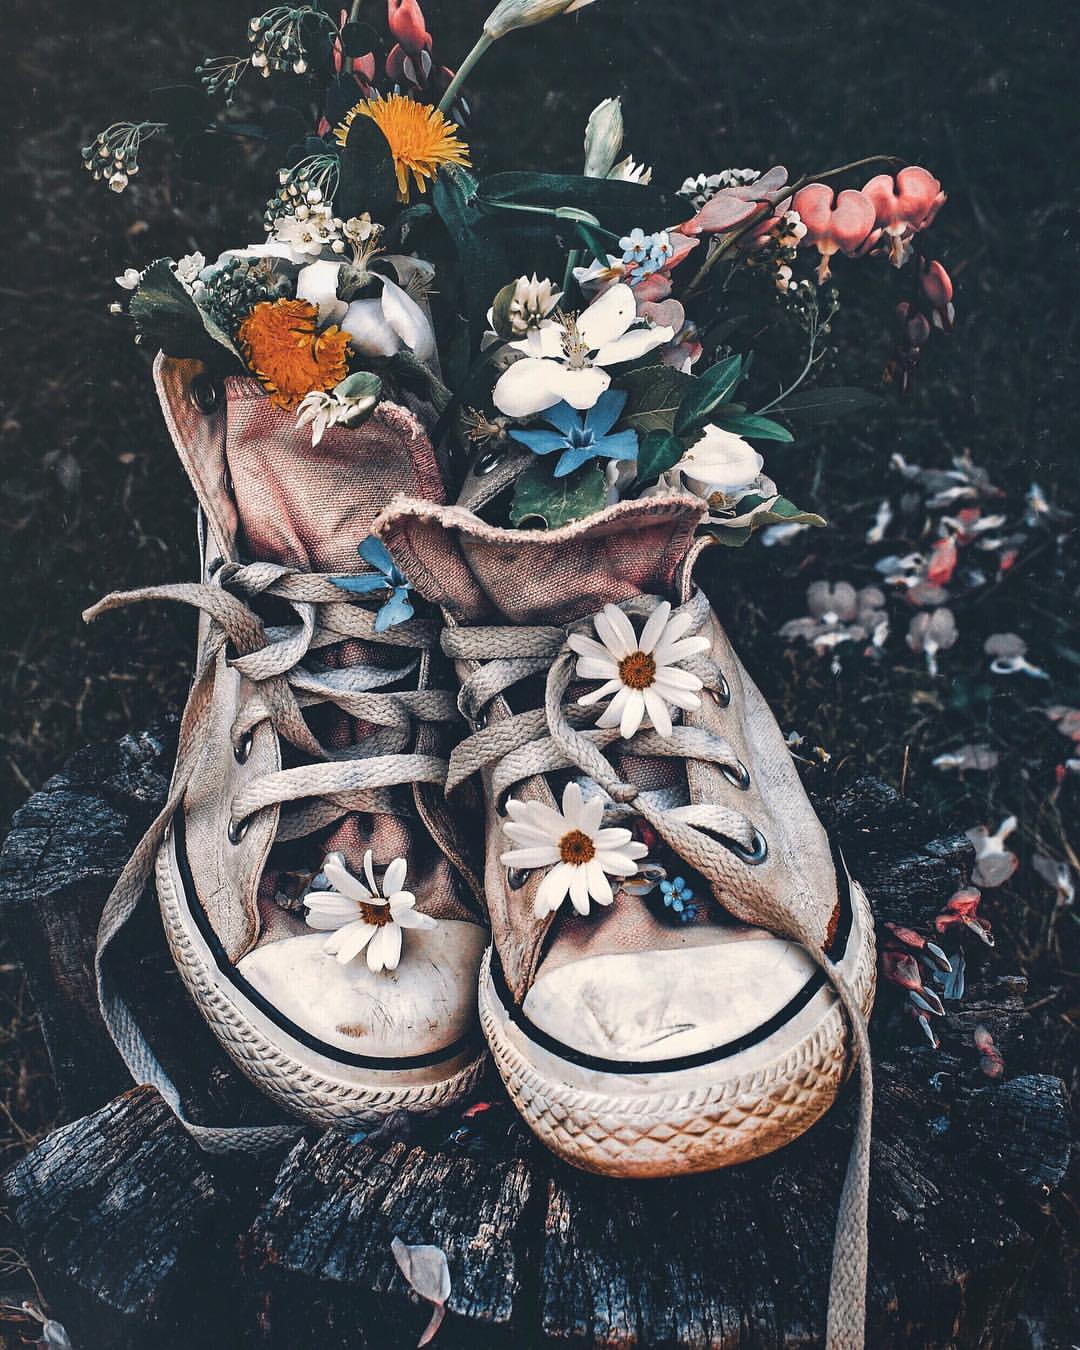 Обувь с цветами